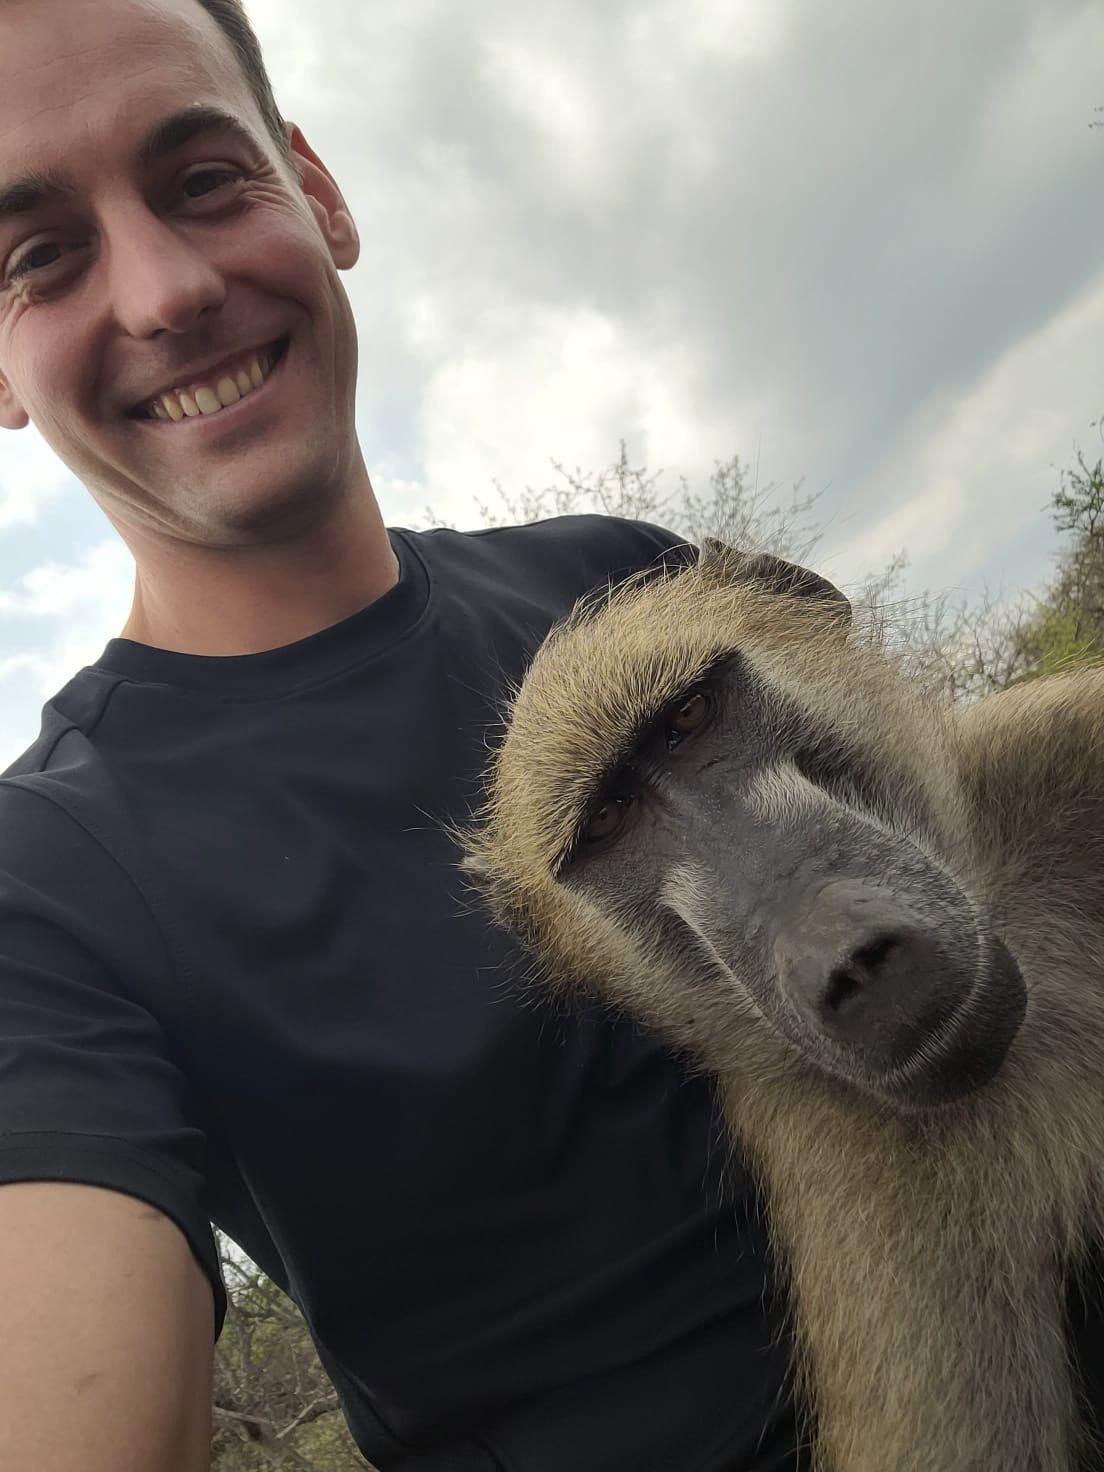 Vincent primate conservation volunteer